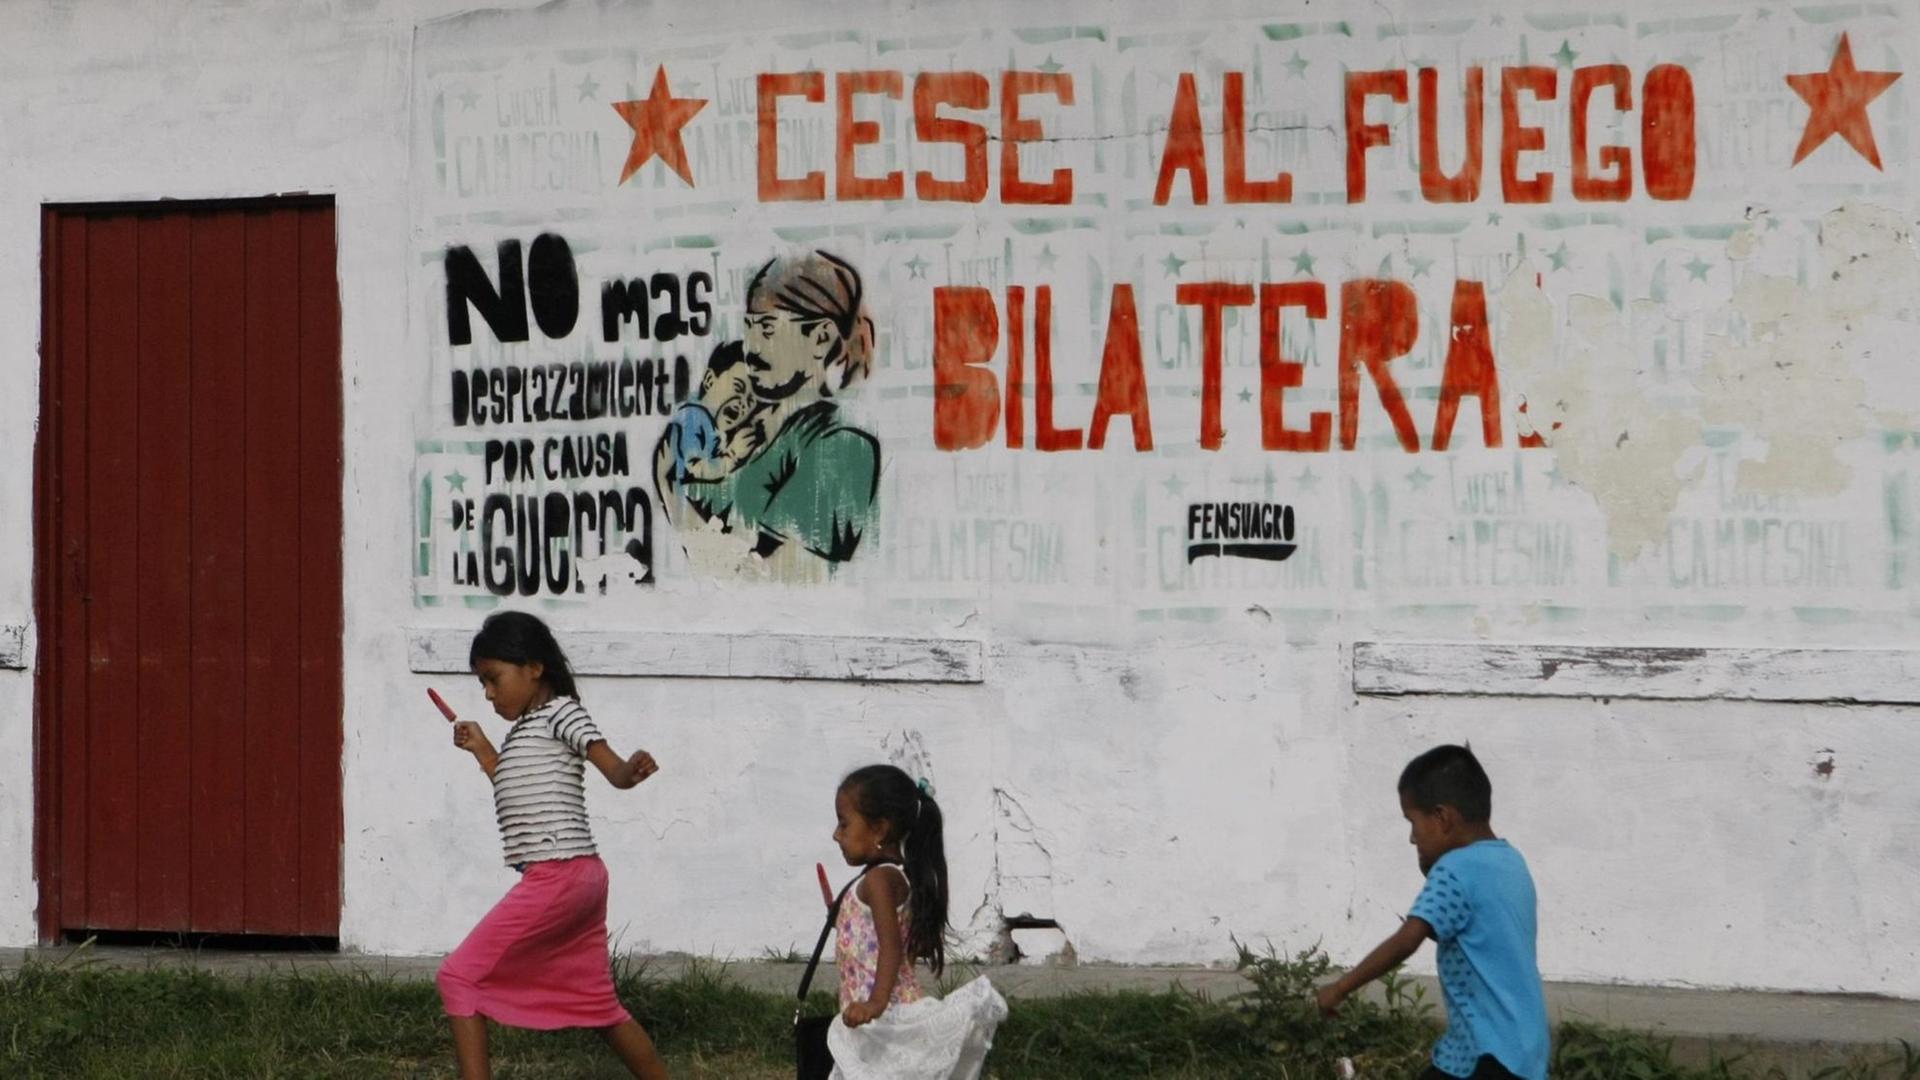 Kinder in Cauca spielen vor einer Mauer, die eine Aufschrift trägt ("Cese al fuego bilatera, "Bilaterale Feuerpause").